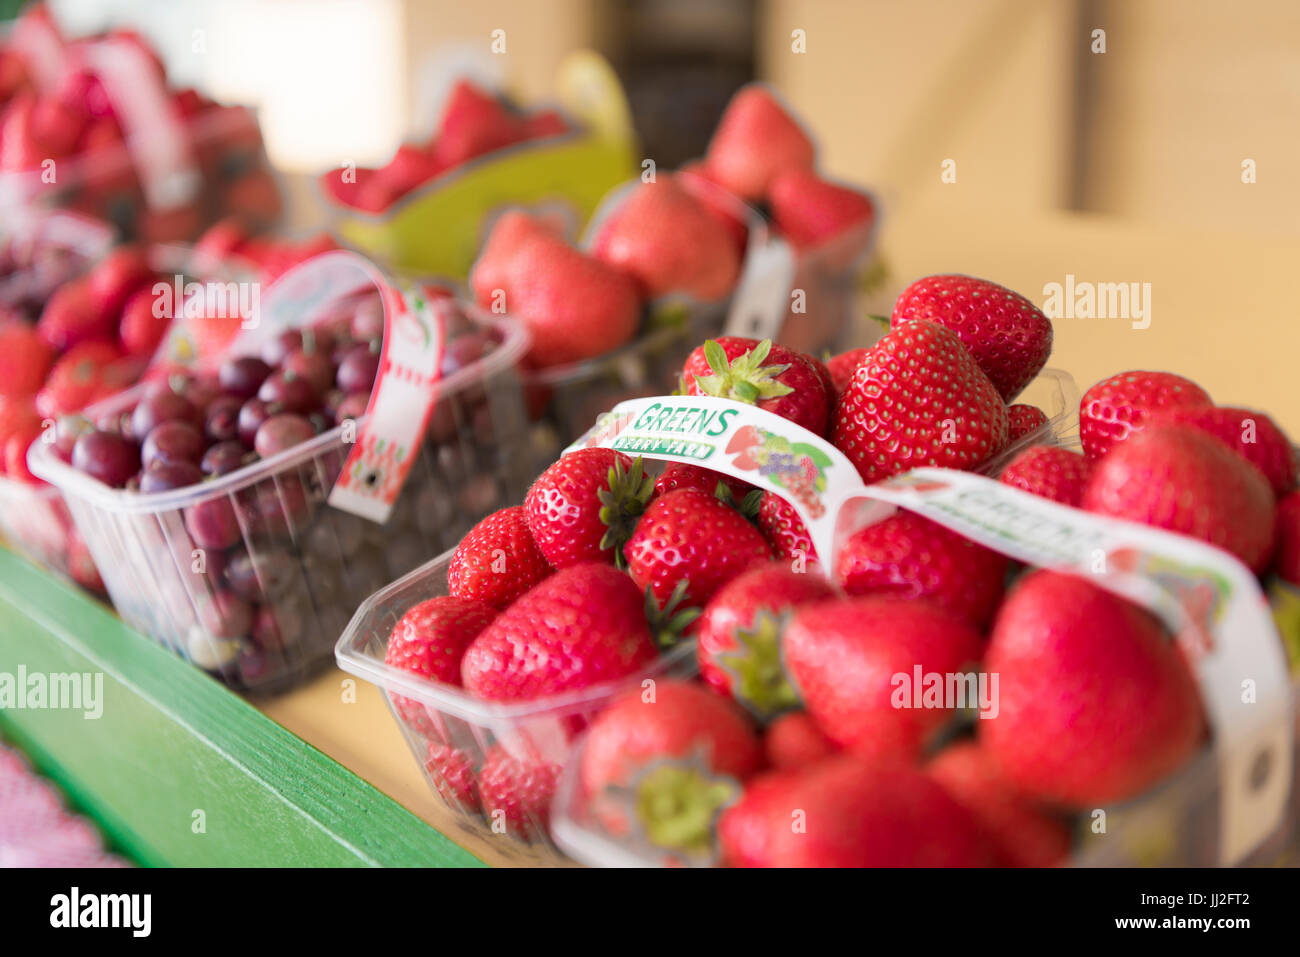 De barquettes, fraîchement cueillies et cultivées sur place durant la saison de fraises et groseilles à Wexford, Irlande. Banque D'Images